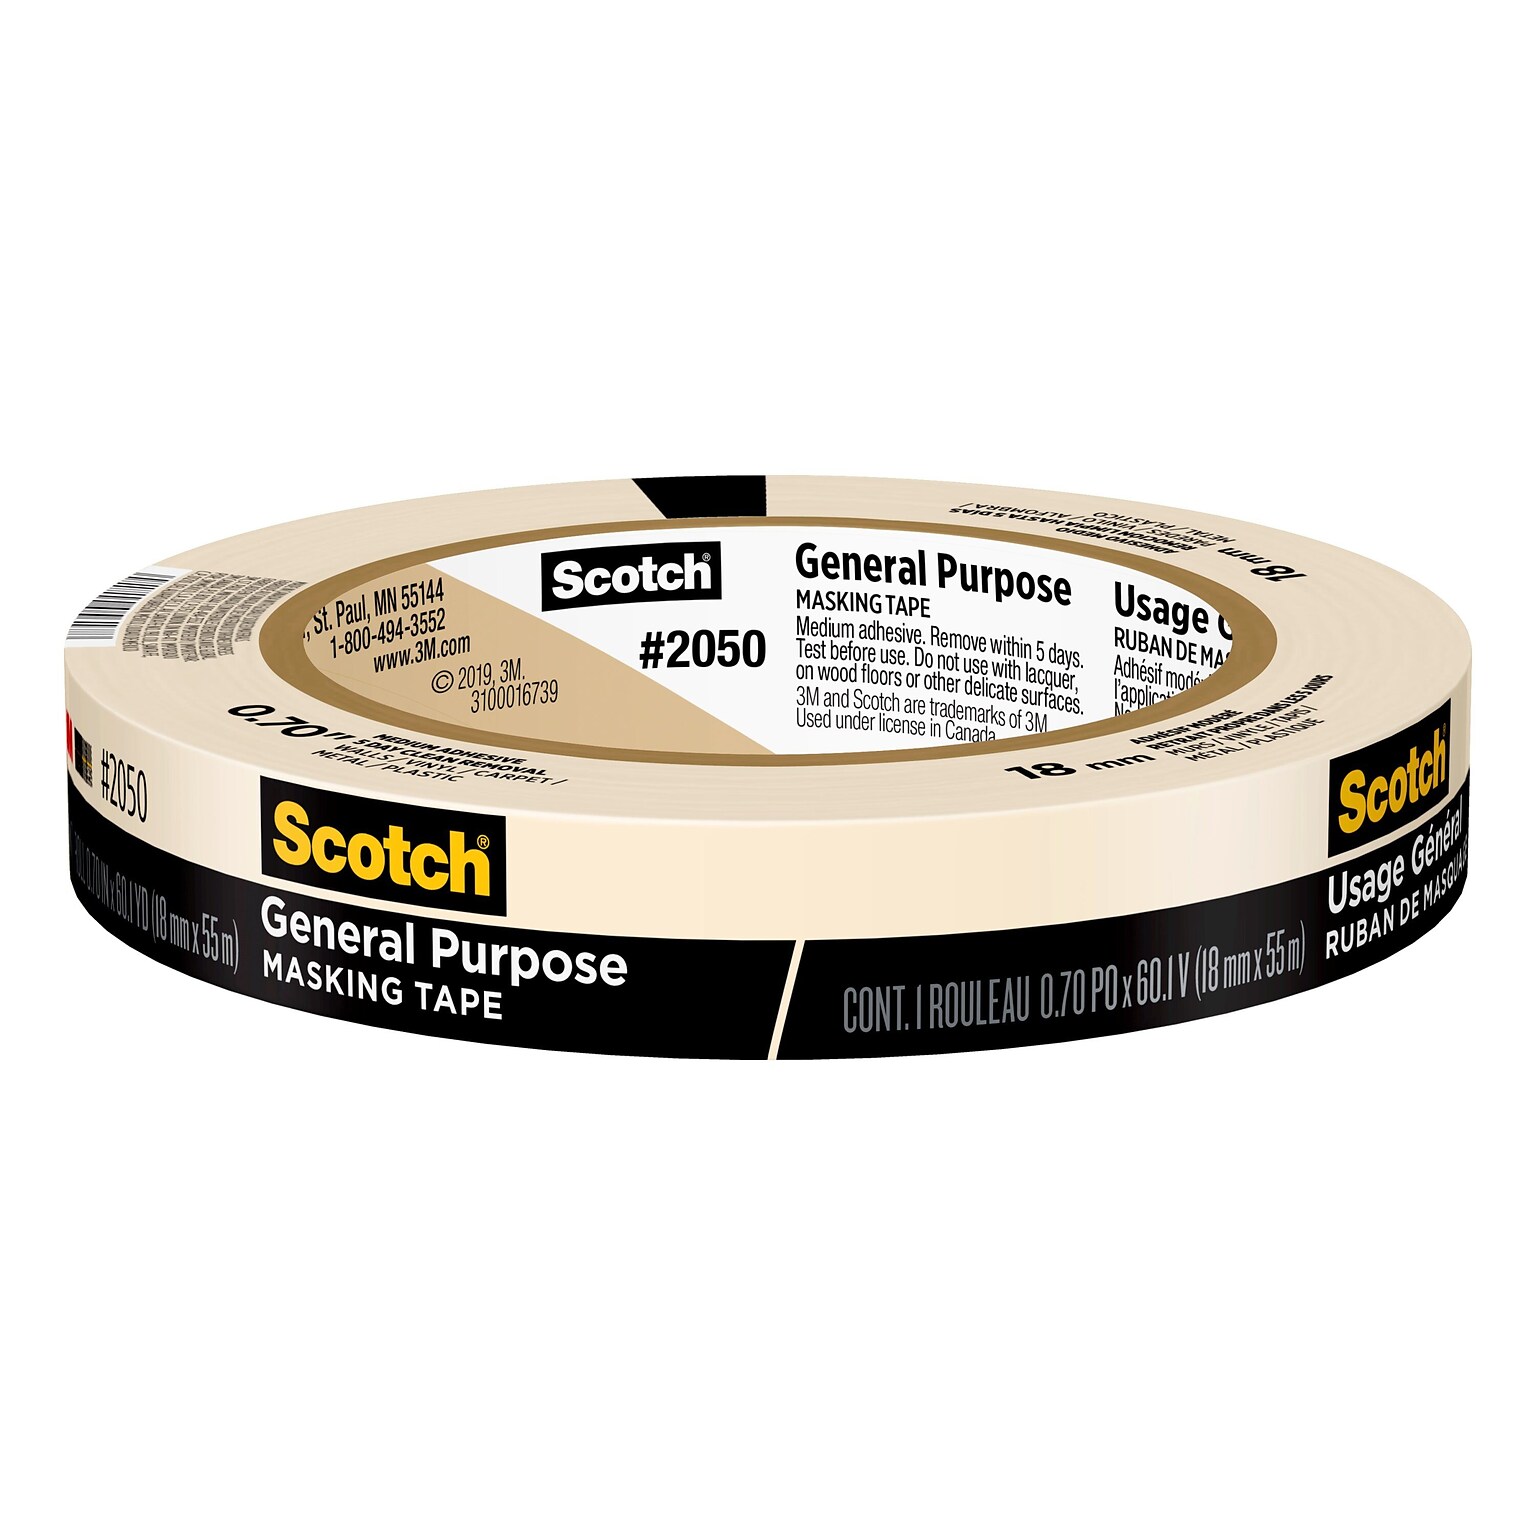 Scotch General Purpose Masking Tape, 0.70 x 60.1 yds. (2050-18AP)